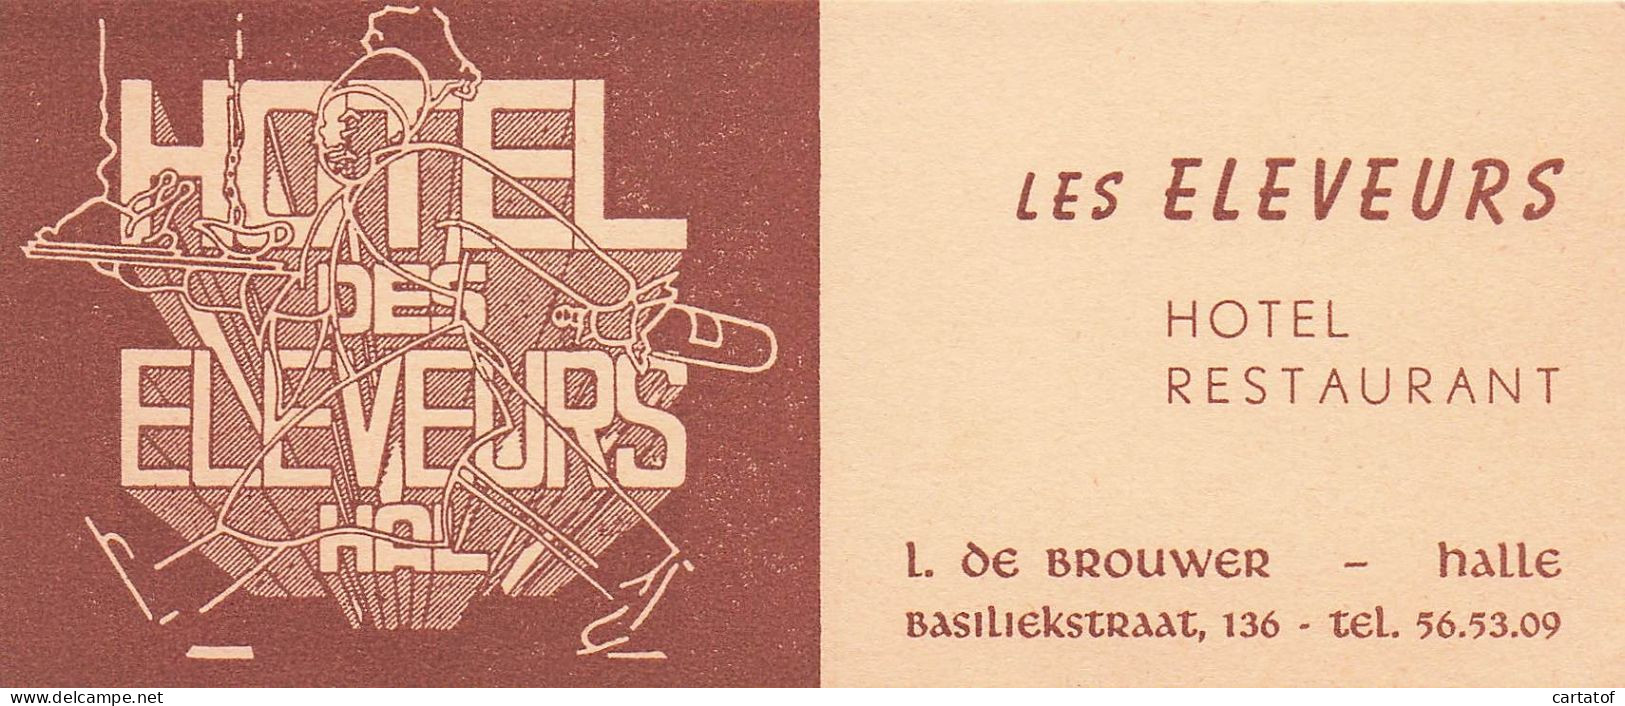 LES ELEVEURS Hôtel Restaurant . L. De BROUWER . HALLE .  - Hotelsleutels (kaarten)